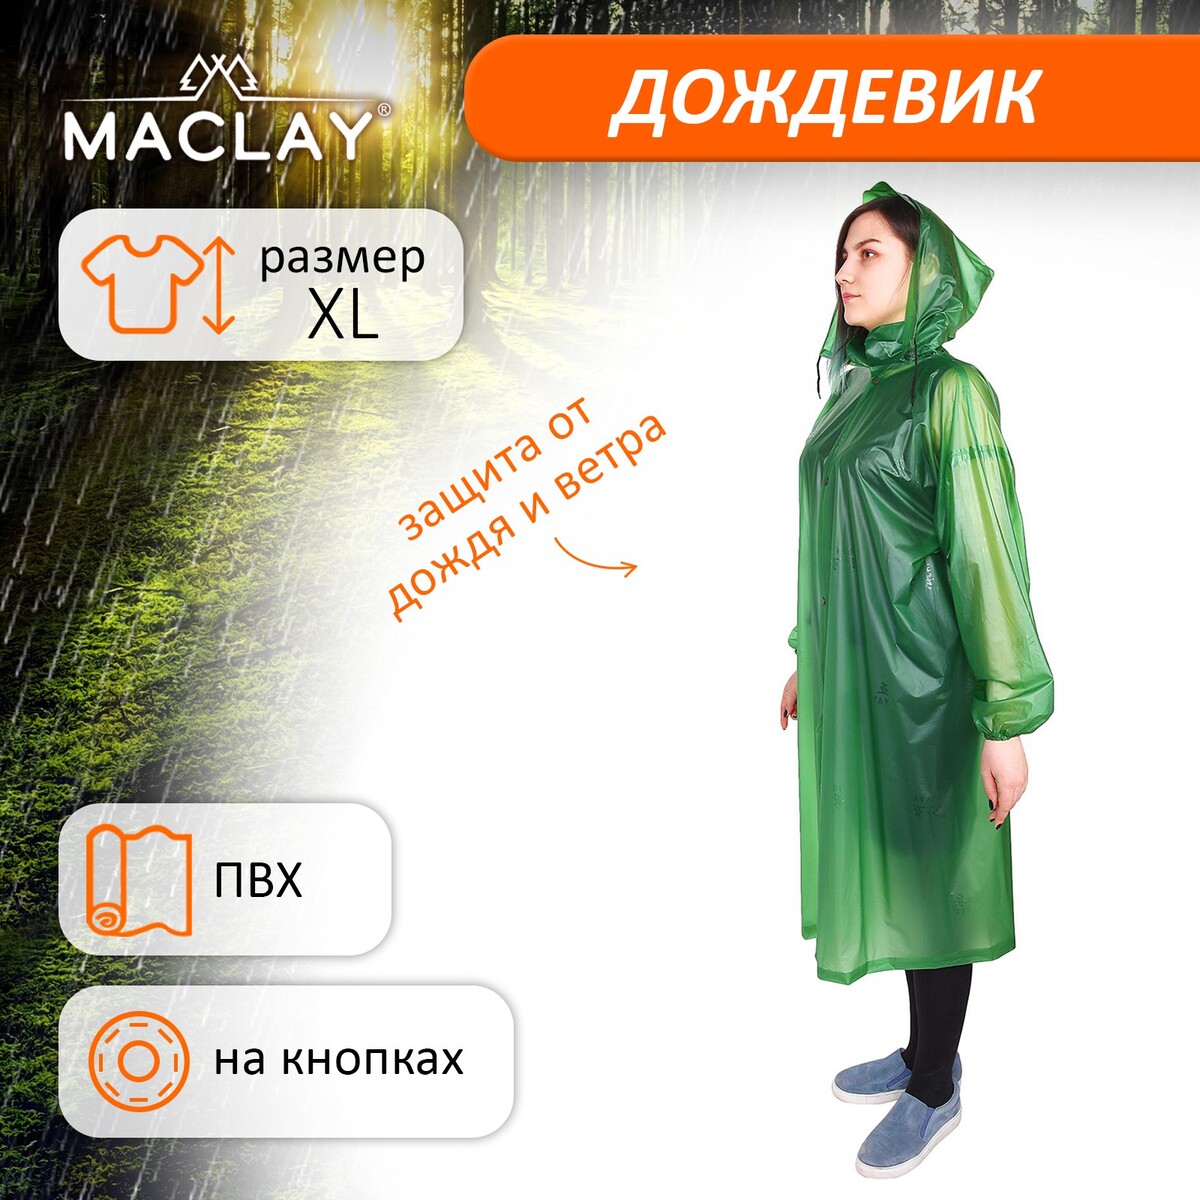 Дождевик-плащ maclay, цвет зеленый, р. xl дождевик плащ maclay р xxl